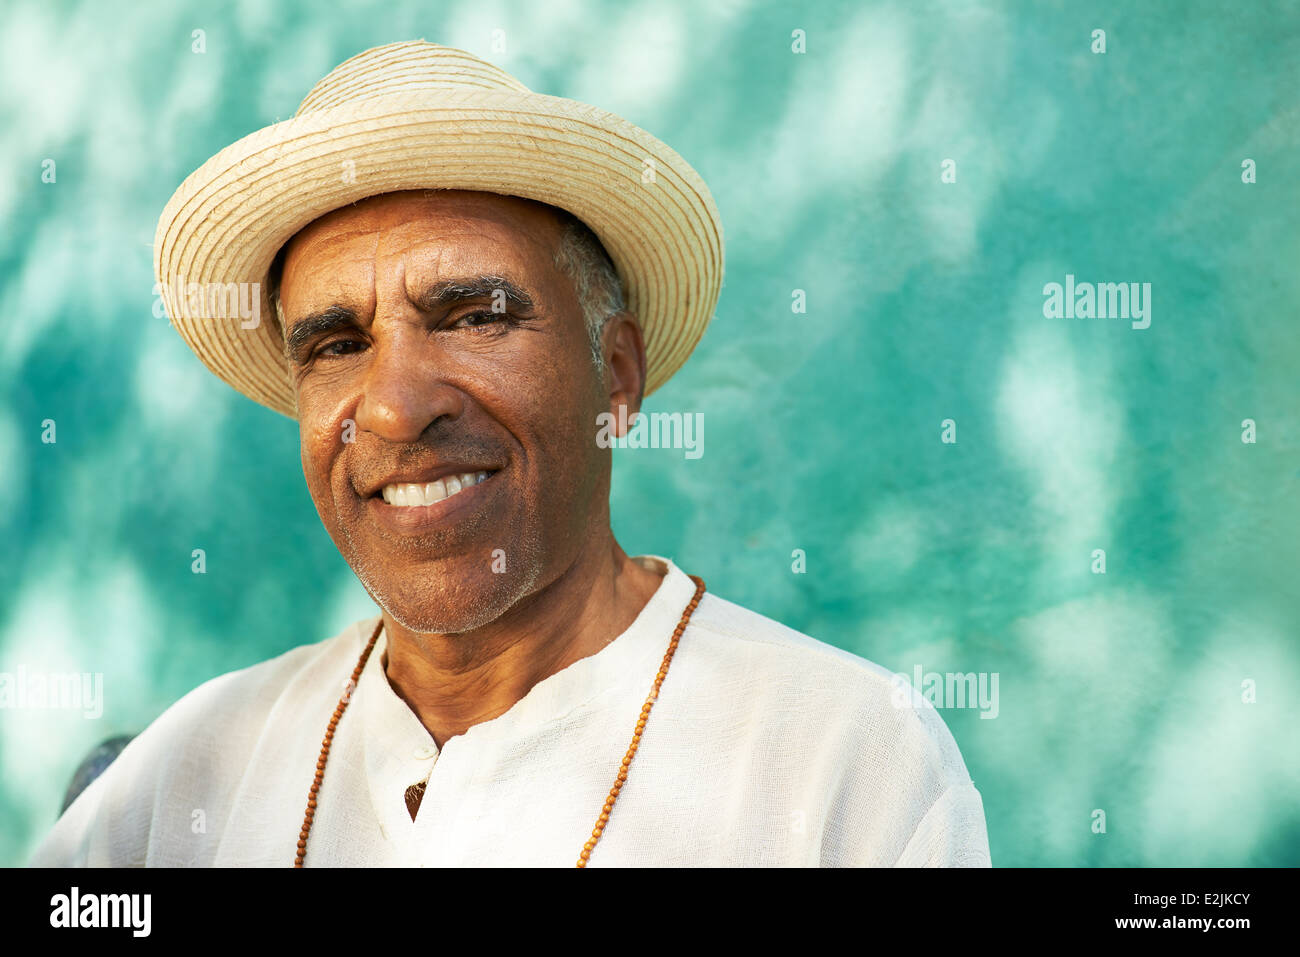 Retrato del hombre hispano de jubilados con sombrero de paja sentado en el parque y mirando a la cámara con expresión feliz Foto de stock